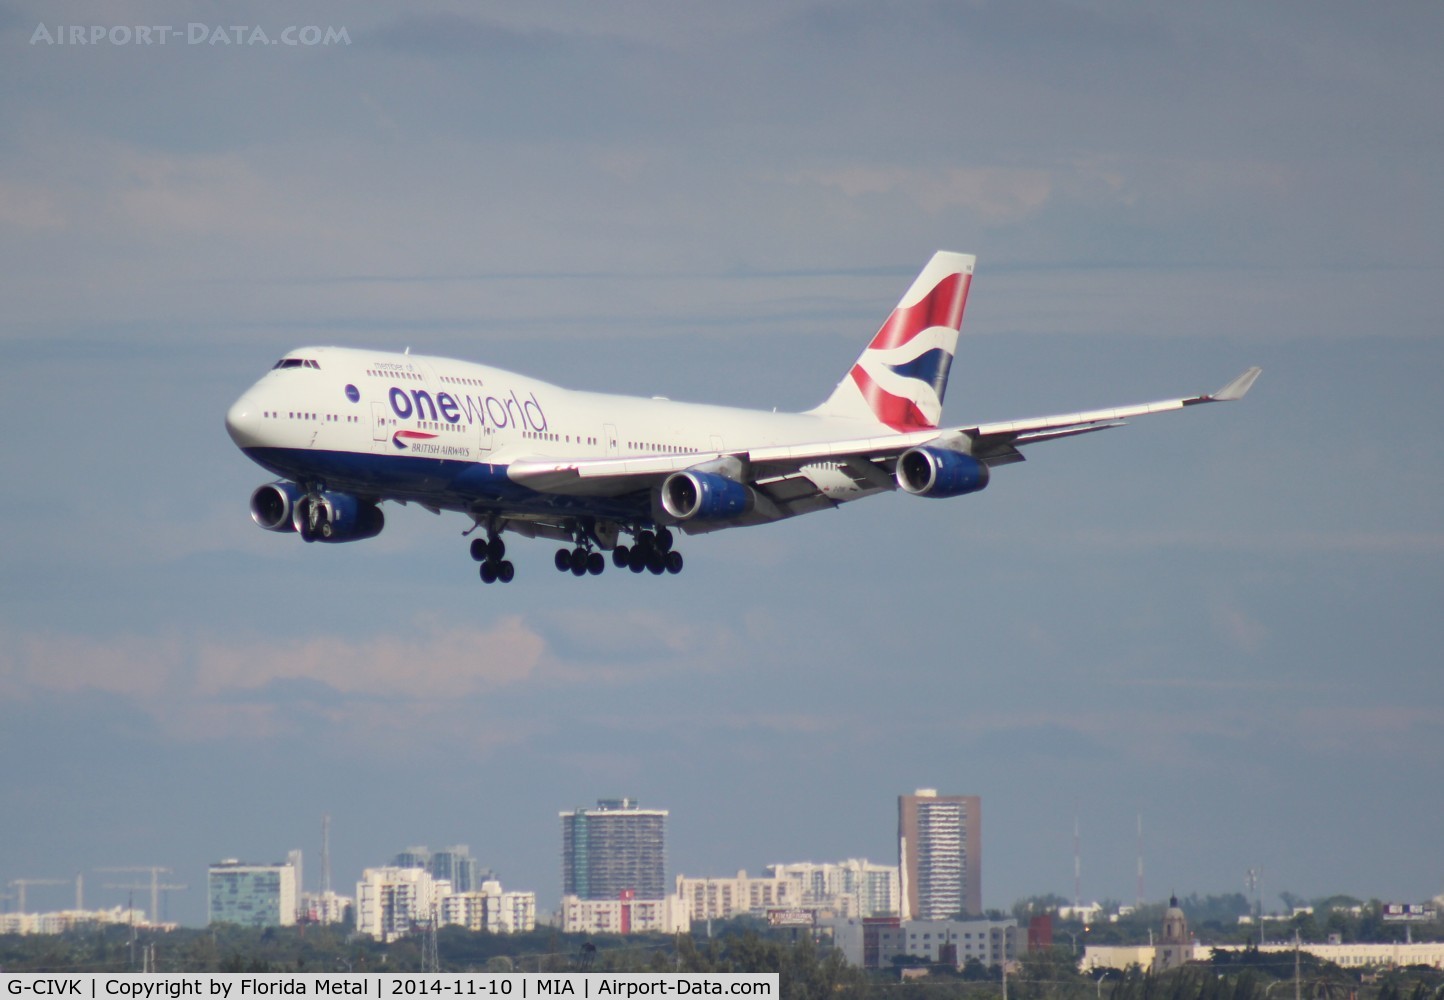 G-CIVK, 1997 Boeing 747-436 C/N 25818, British Airways